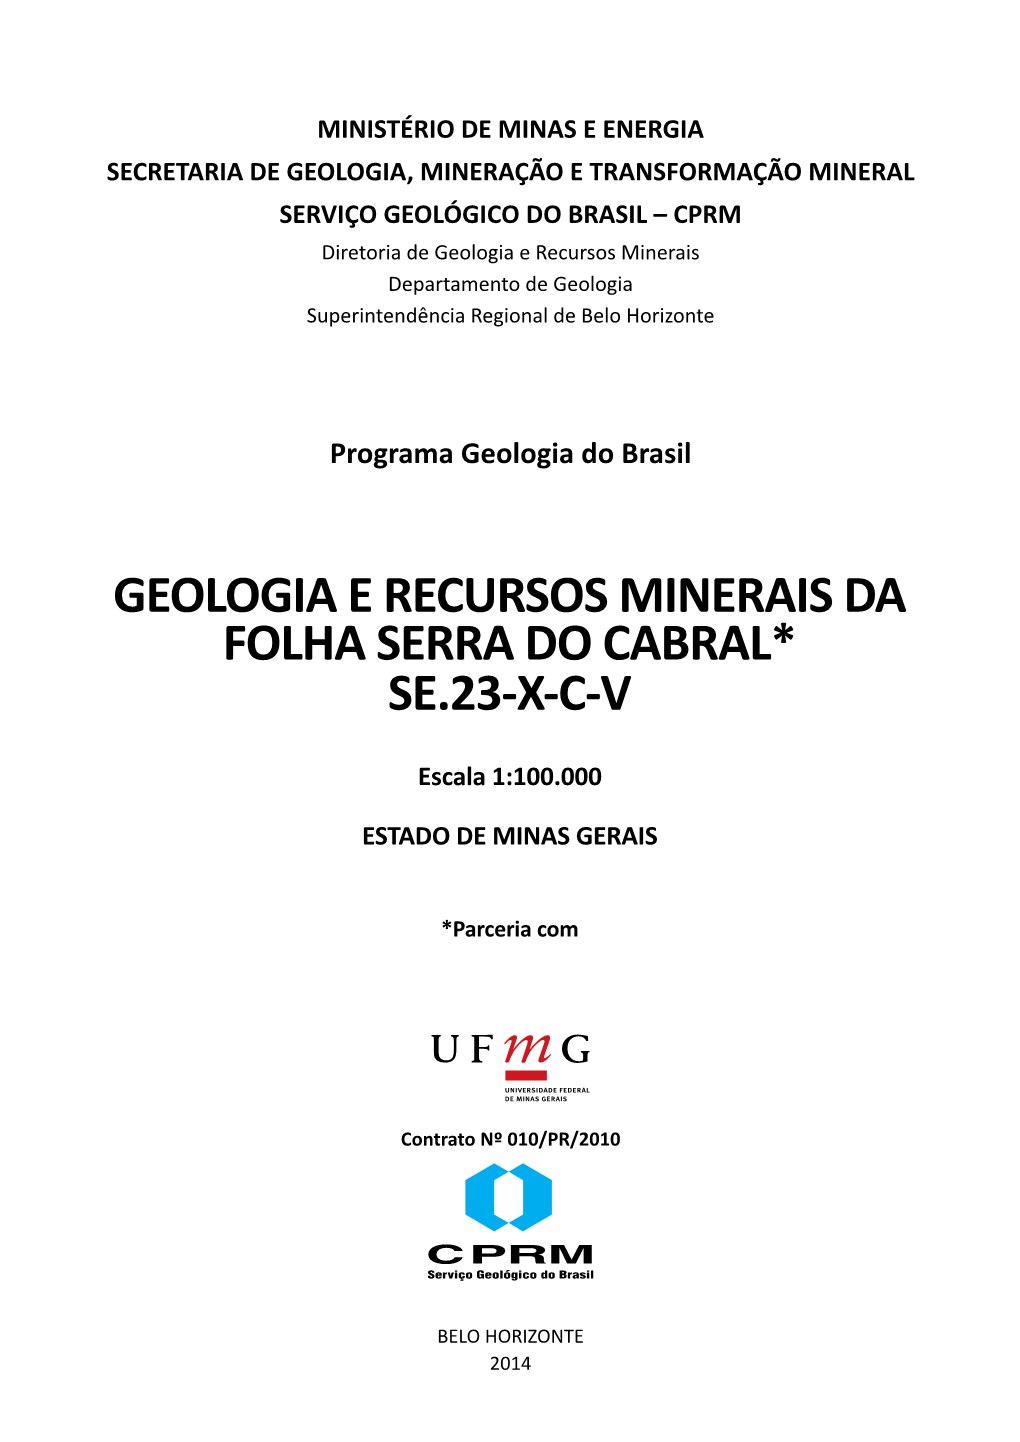 Geologia E Recursos Minerais Da Folha Serra Do Cabral* Se.23-X-C-V